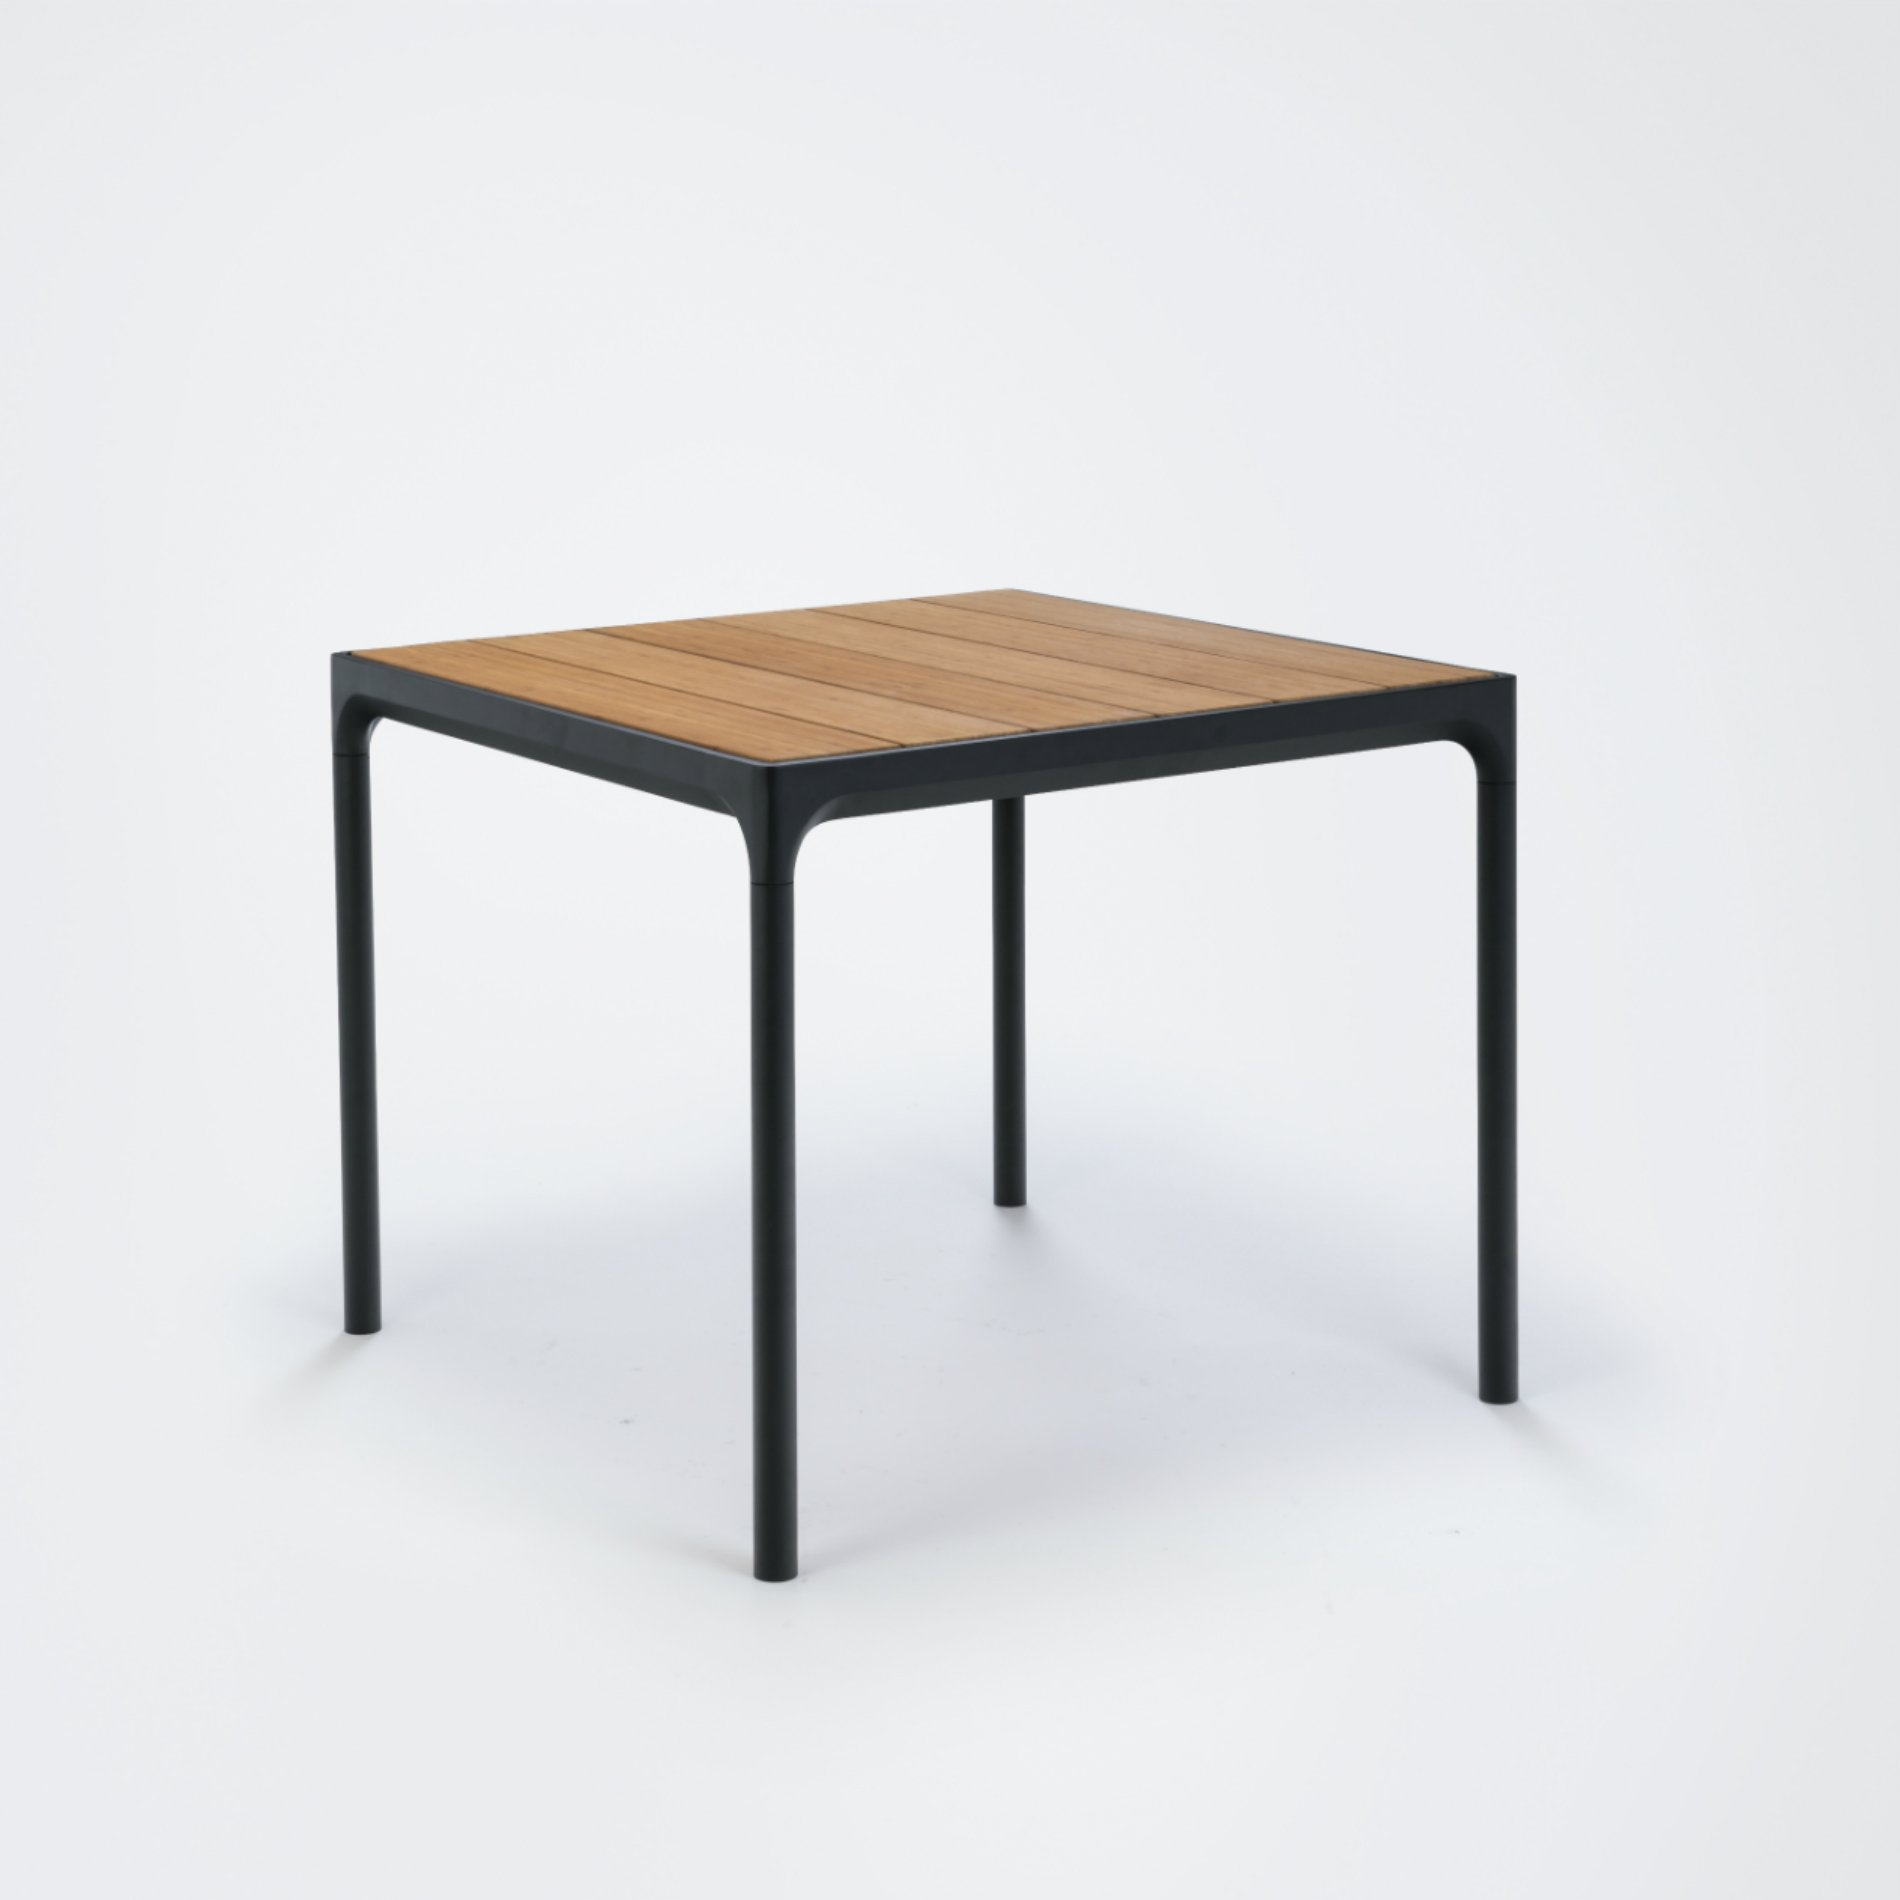 Gartentisch "Four" von Houe, Gestell Aluminium schwarz, Tischplatte Bambus, 90x90 cm